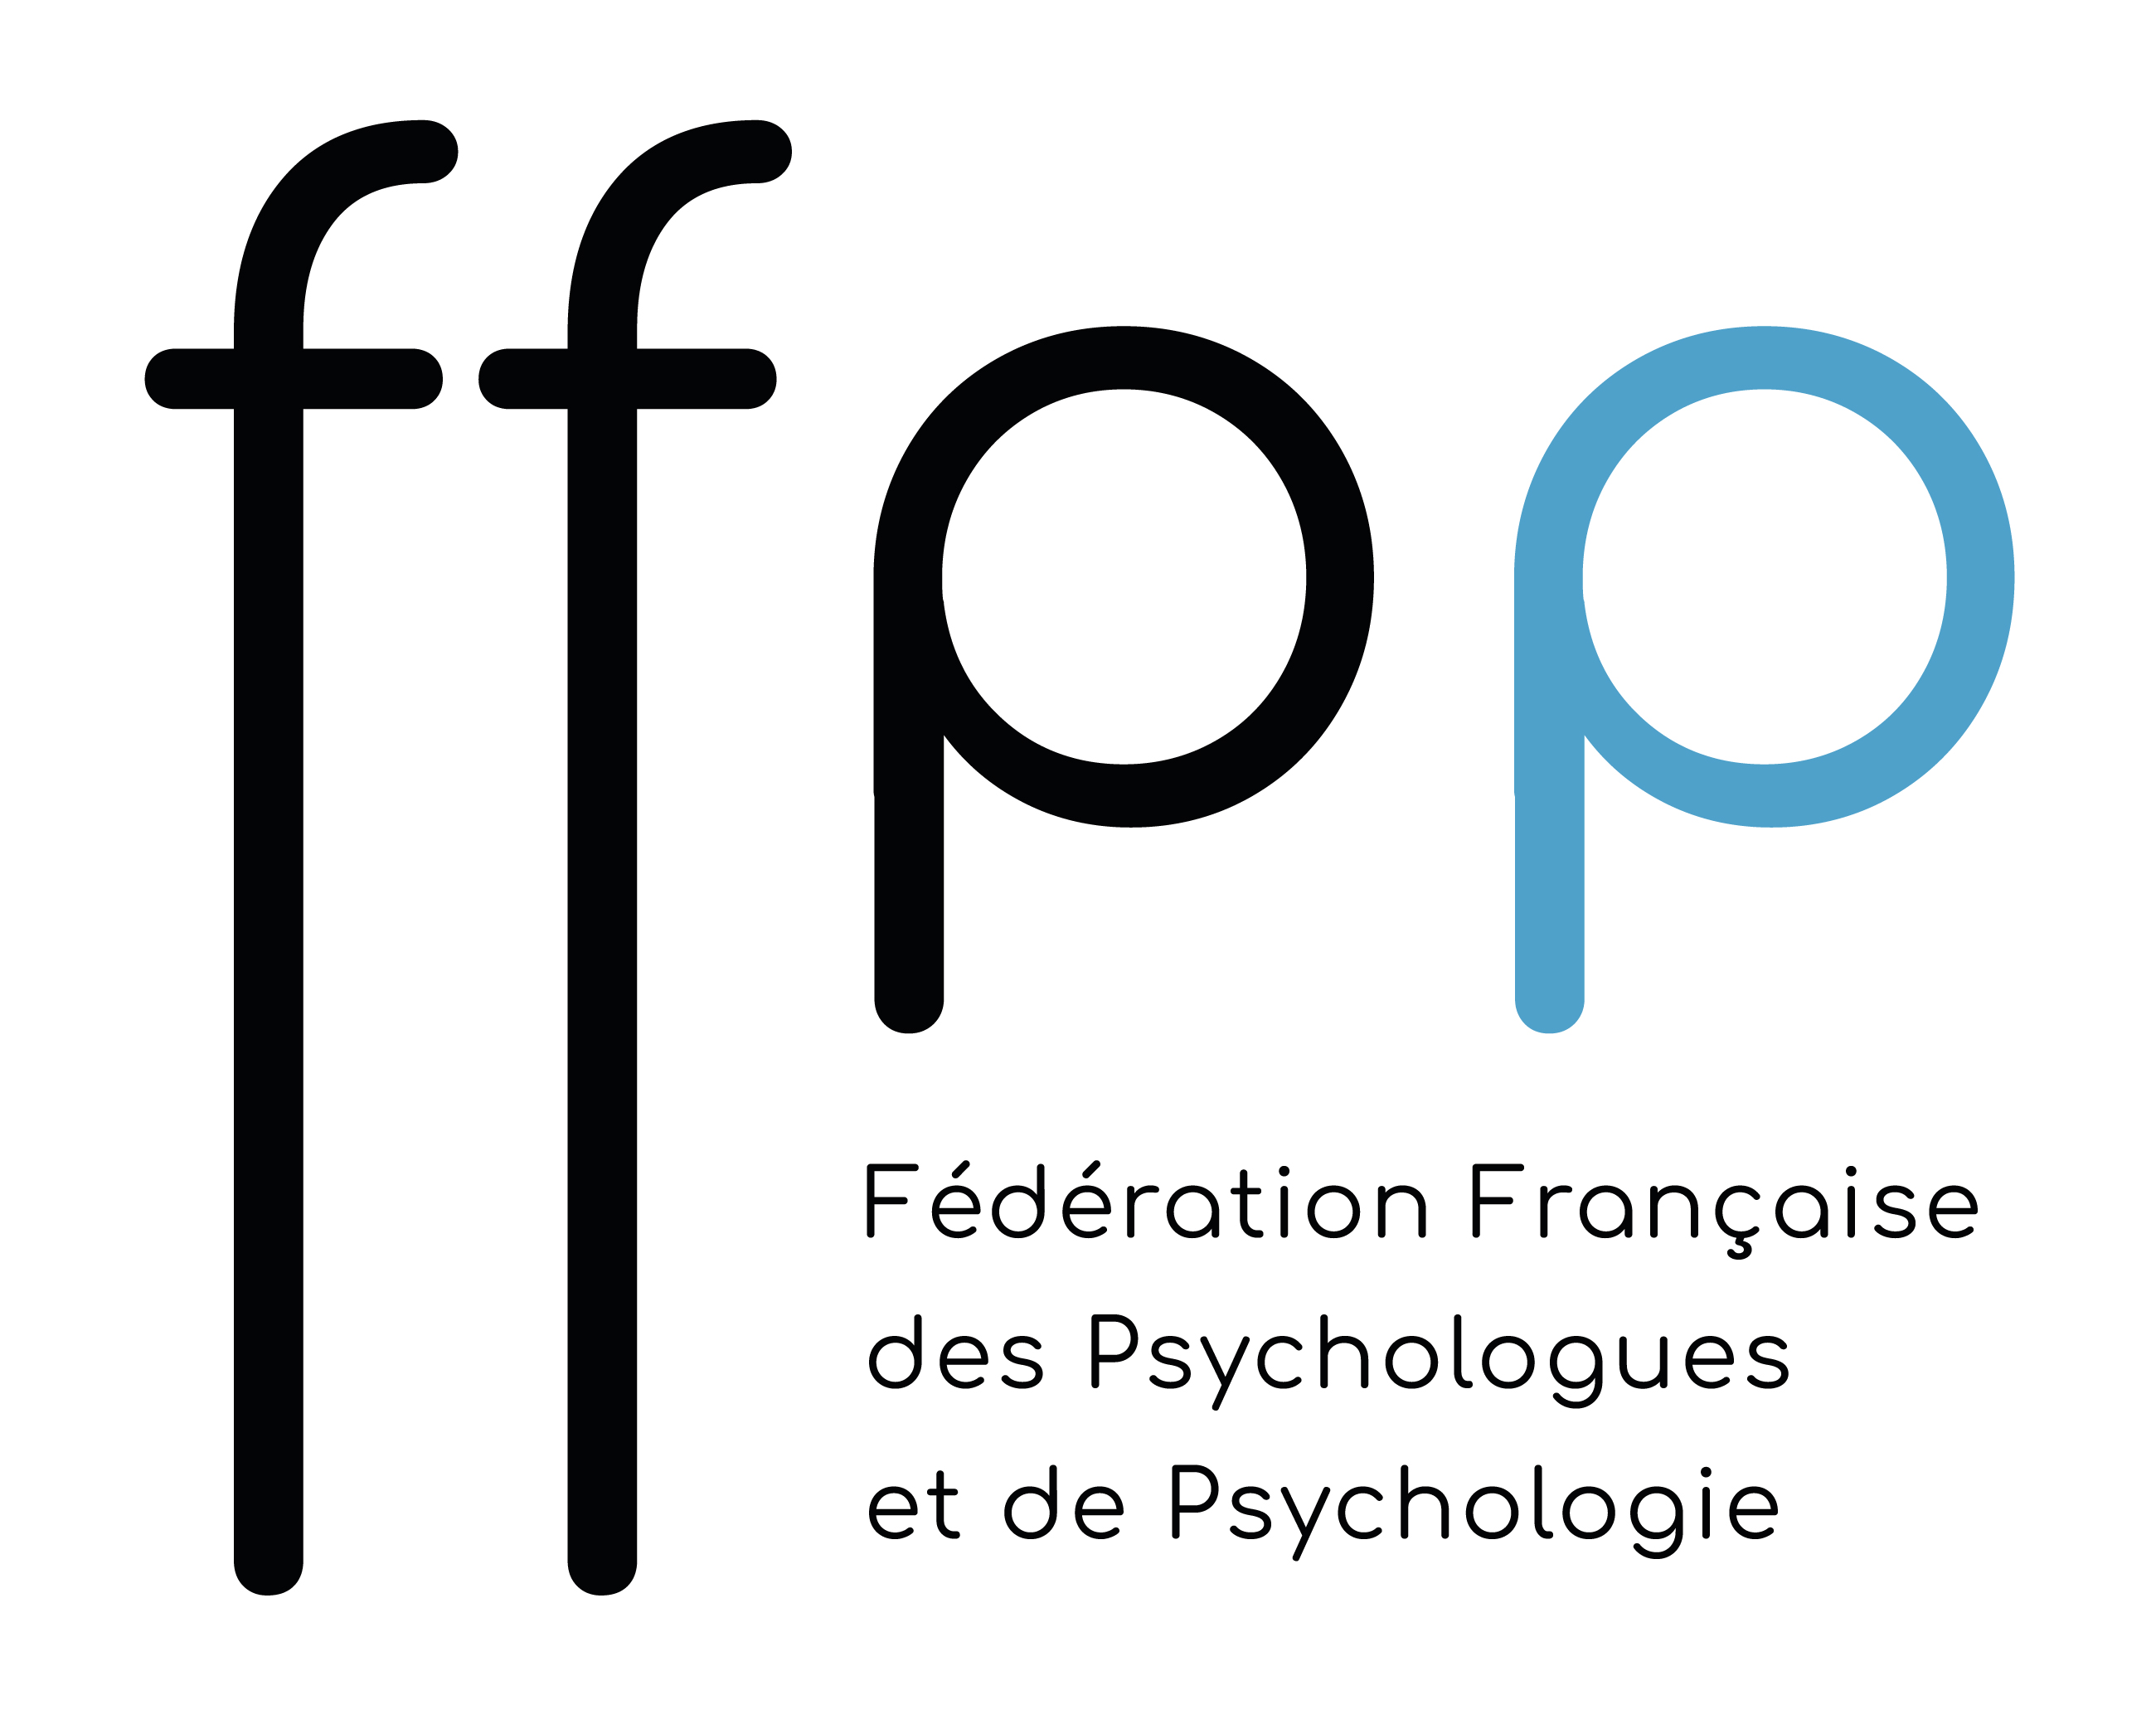 Fédération Française des Psychologues et de Psychologie